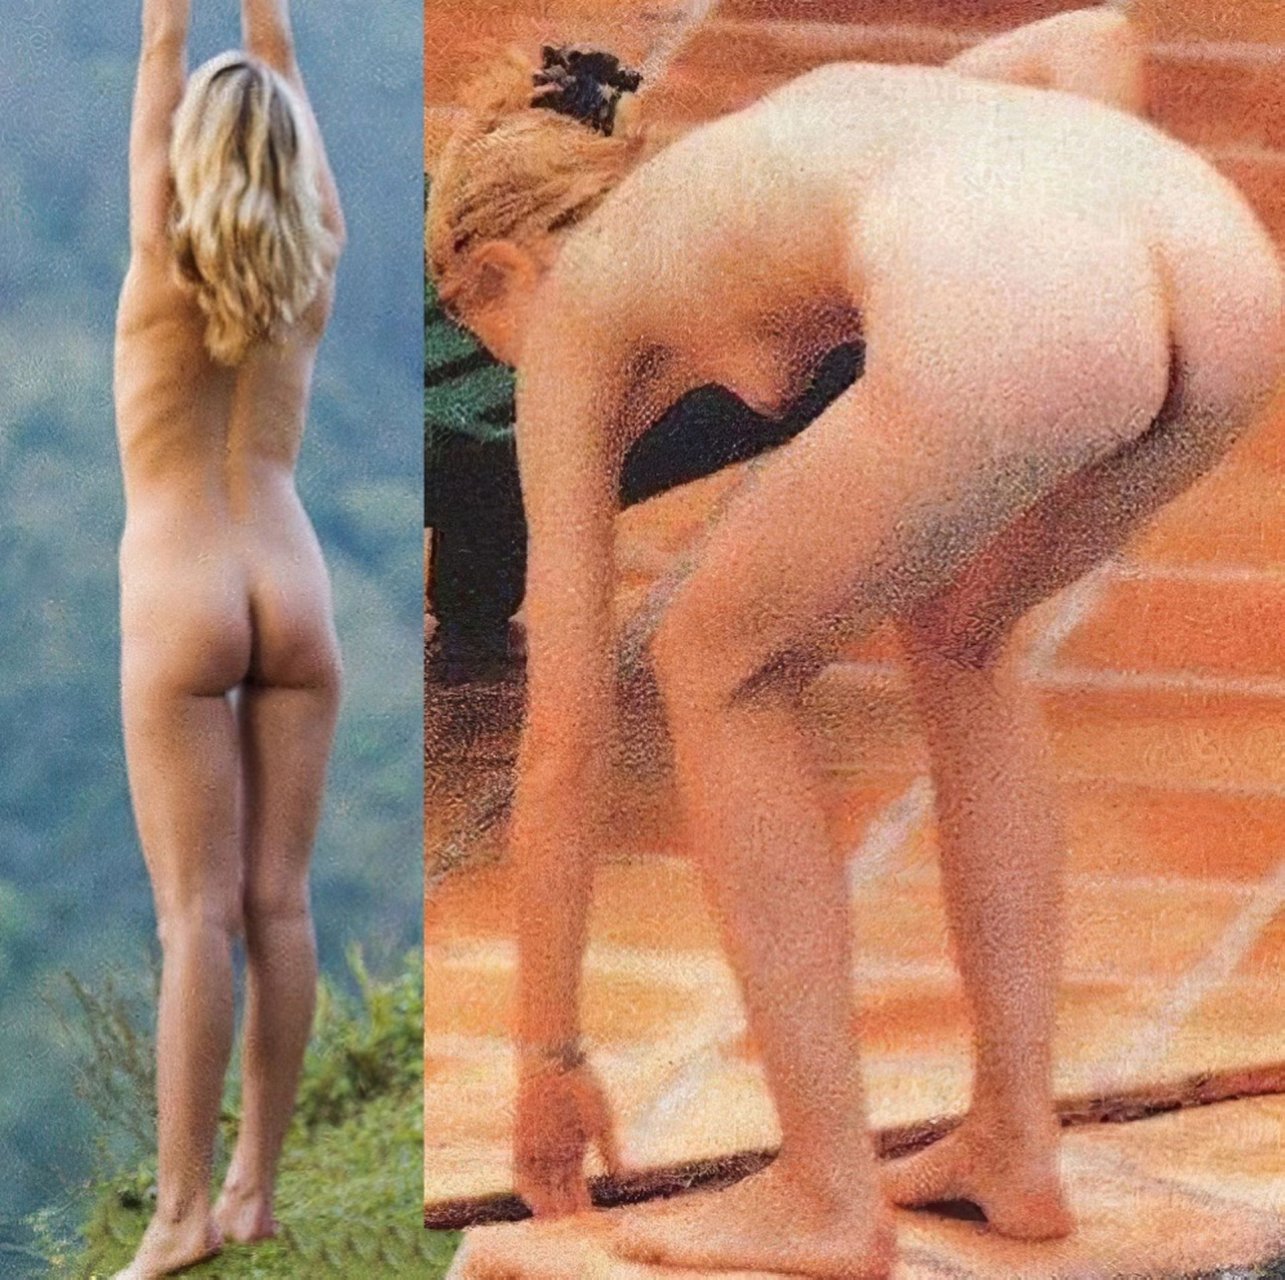 Gwyneth paltrow leaked nudes